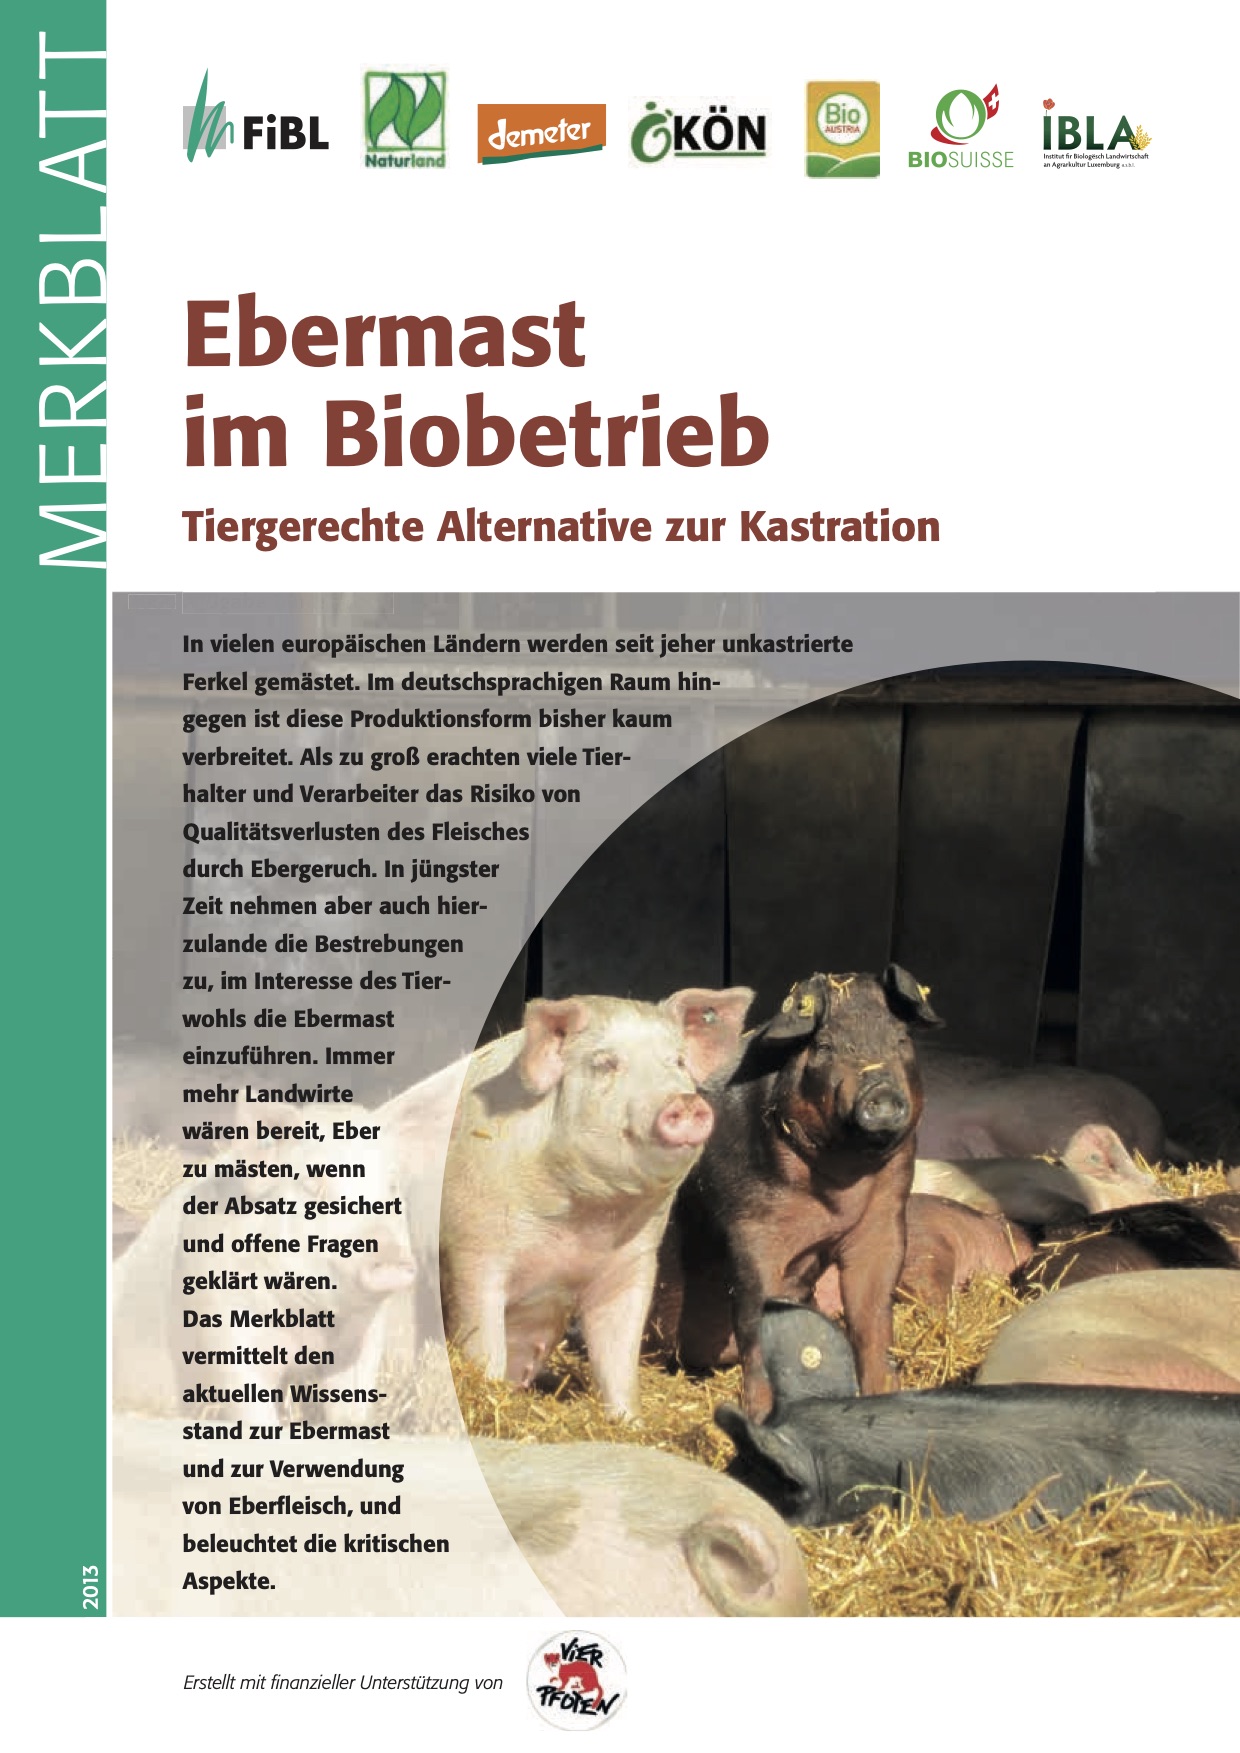 Ebermast auf Biobetrieben: tierfreundliche Alternative zur Kastration